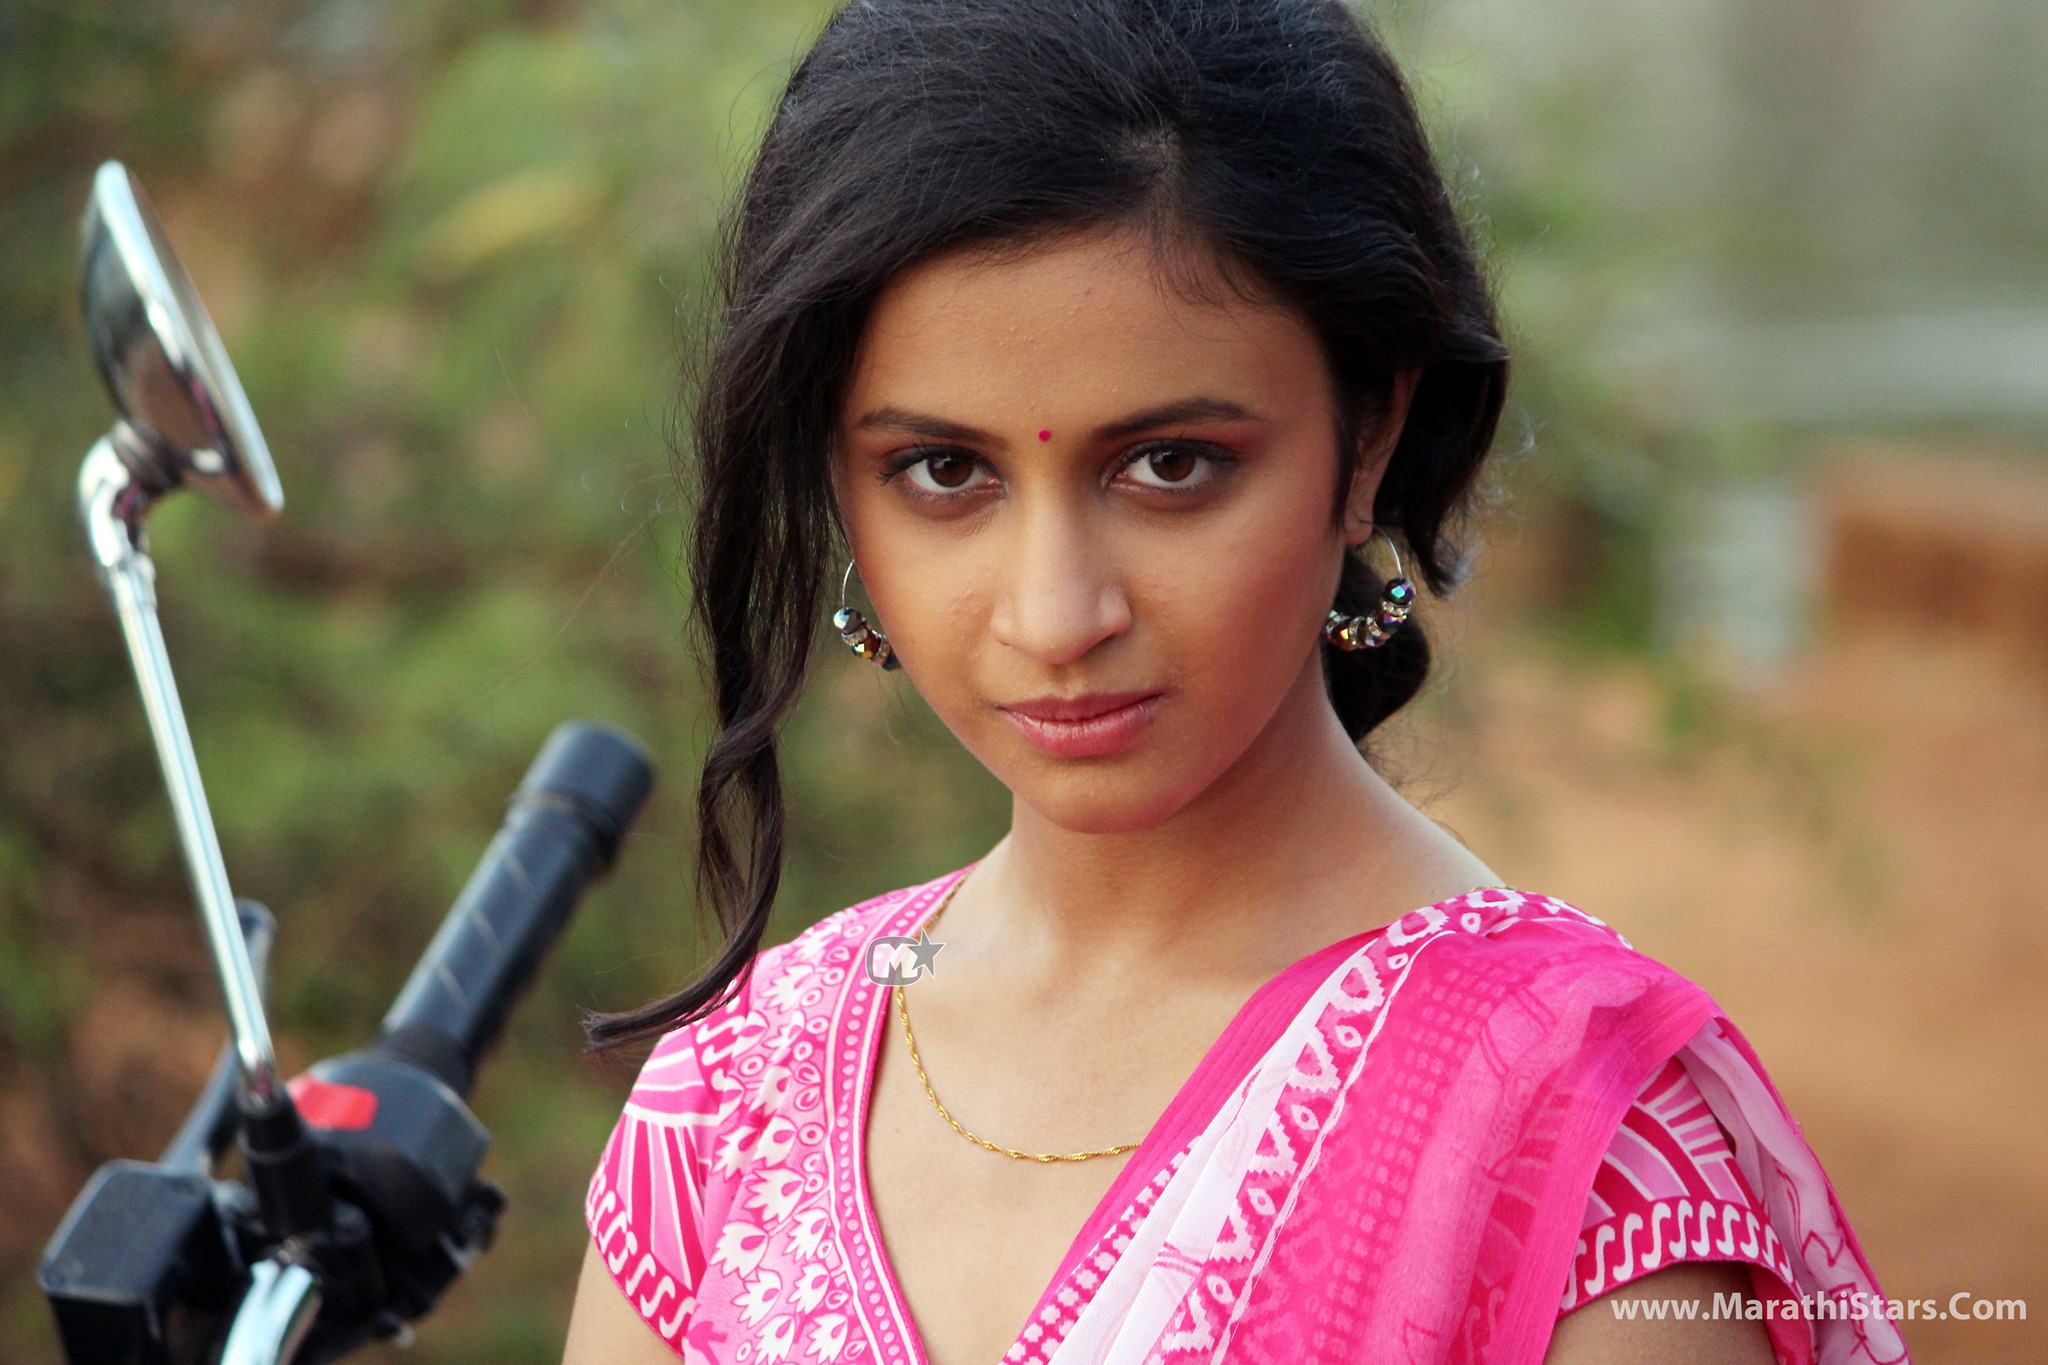 Ritika Shrotri Marathi Actress Photos, Biography, Wiki